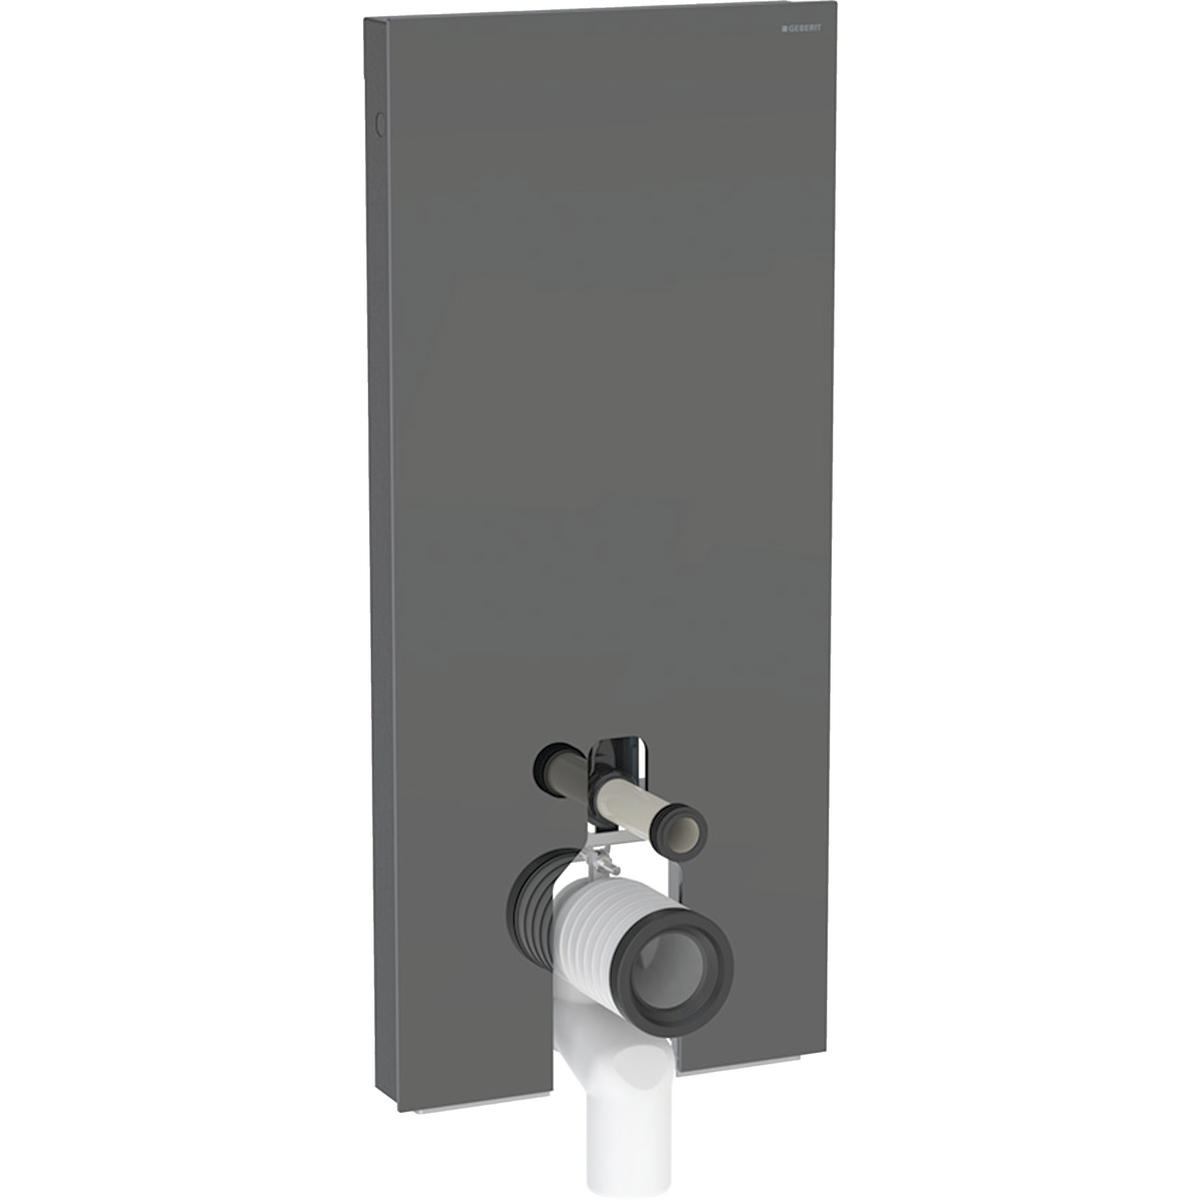 Monolith Plus Sanitärmodul für Stand-WC, 114 cm, Frontverkleidung aus Glas: Glas lava, Aluminium schwarzchrom